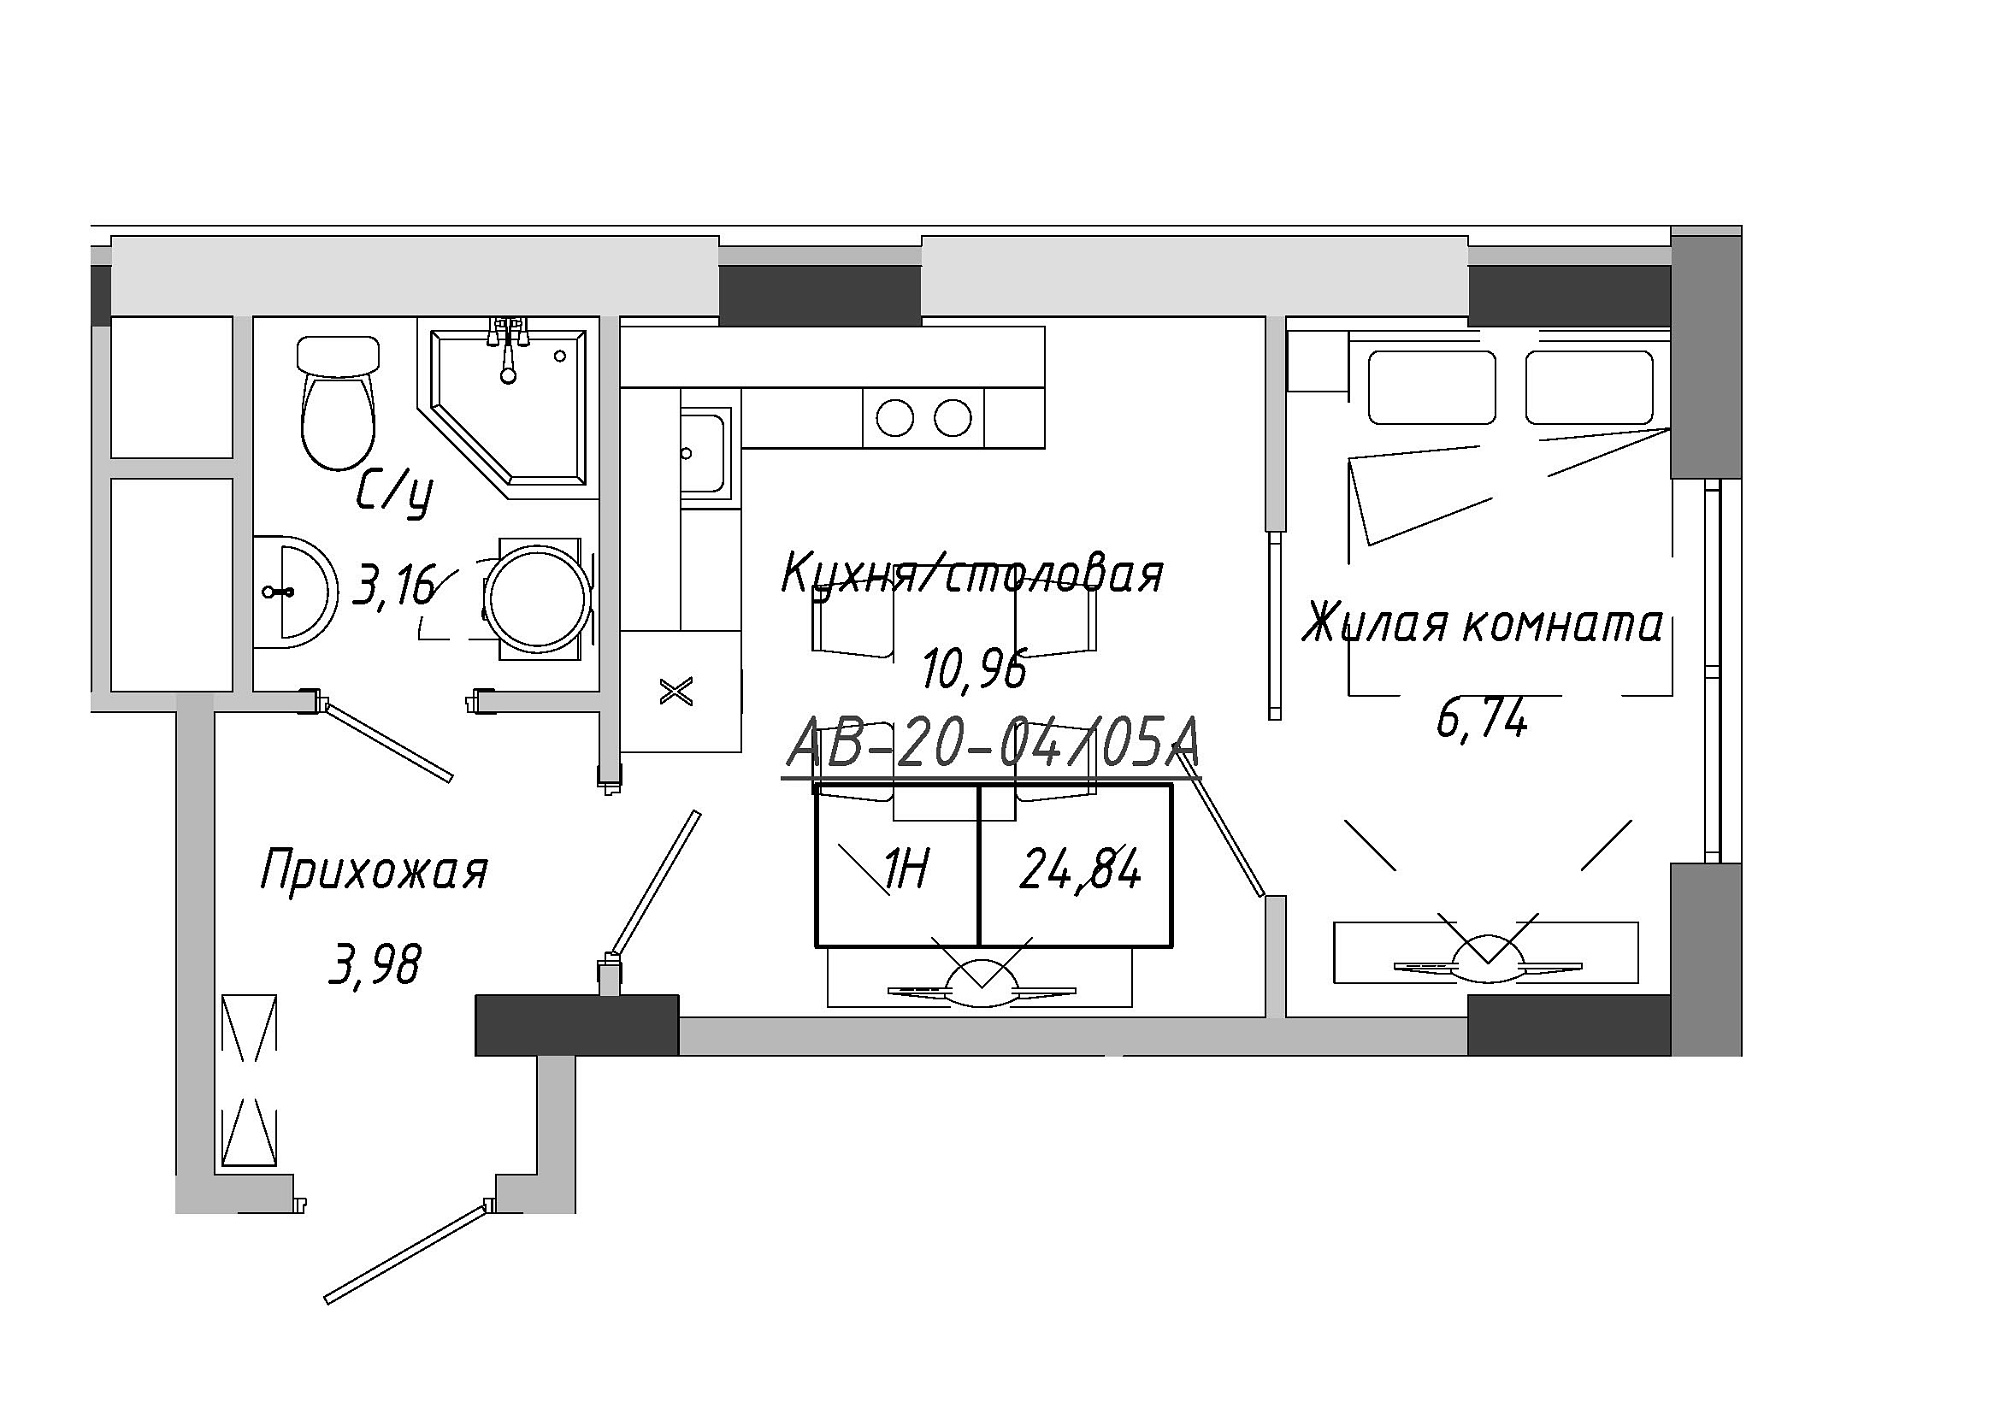 Планування 1-к квартира площею 24.84м2, AB-20-04/0005а.